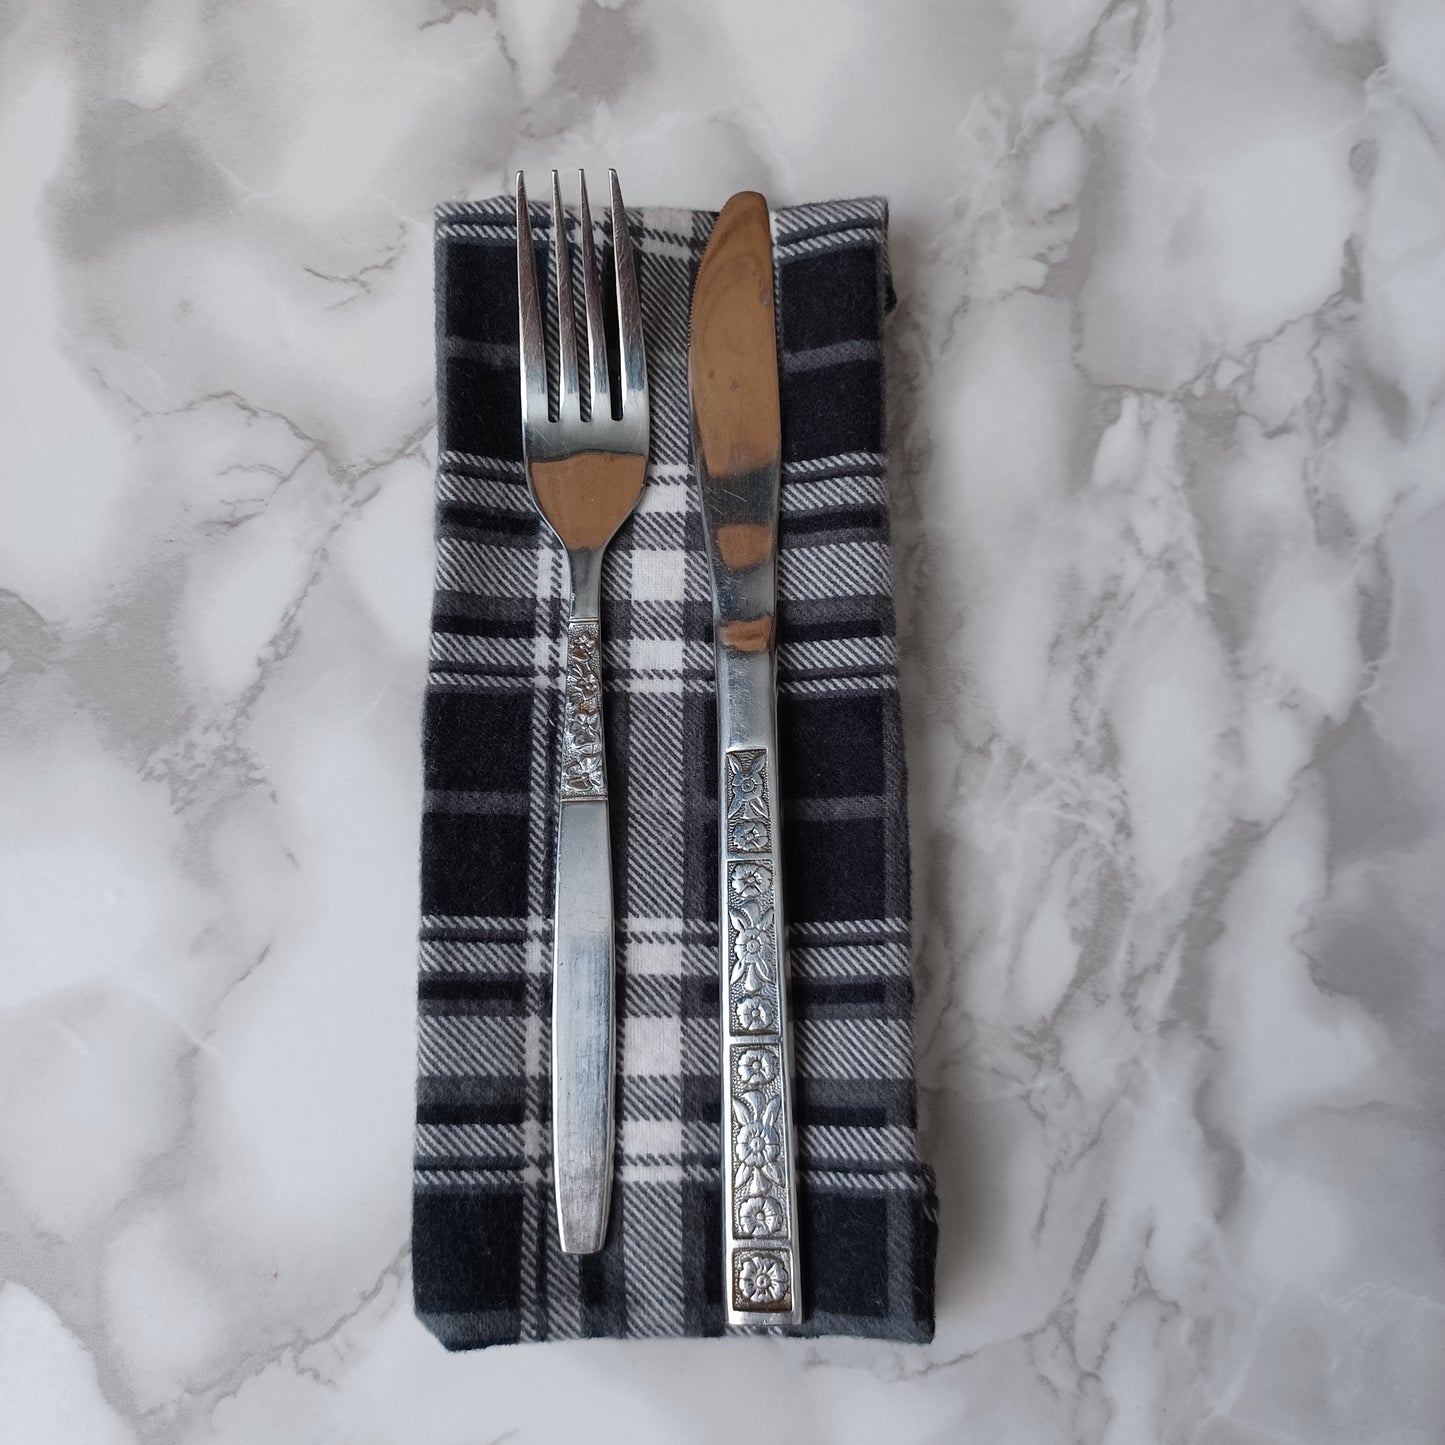 Serviettes de table et Essuie-tout-Carreauté noir, gris et blanc/Napkins and Paperless towels-Black, gray and white checkered